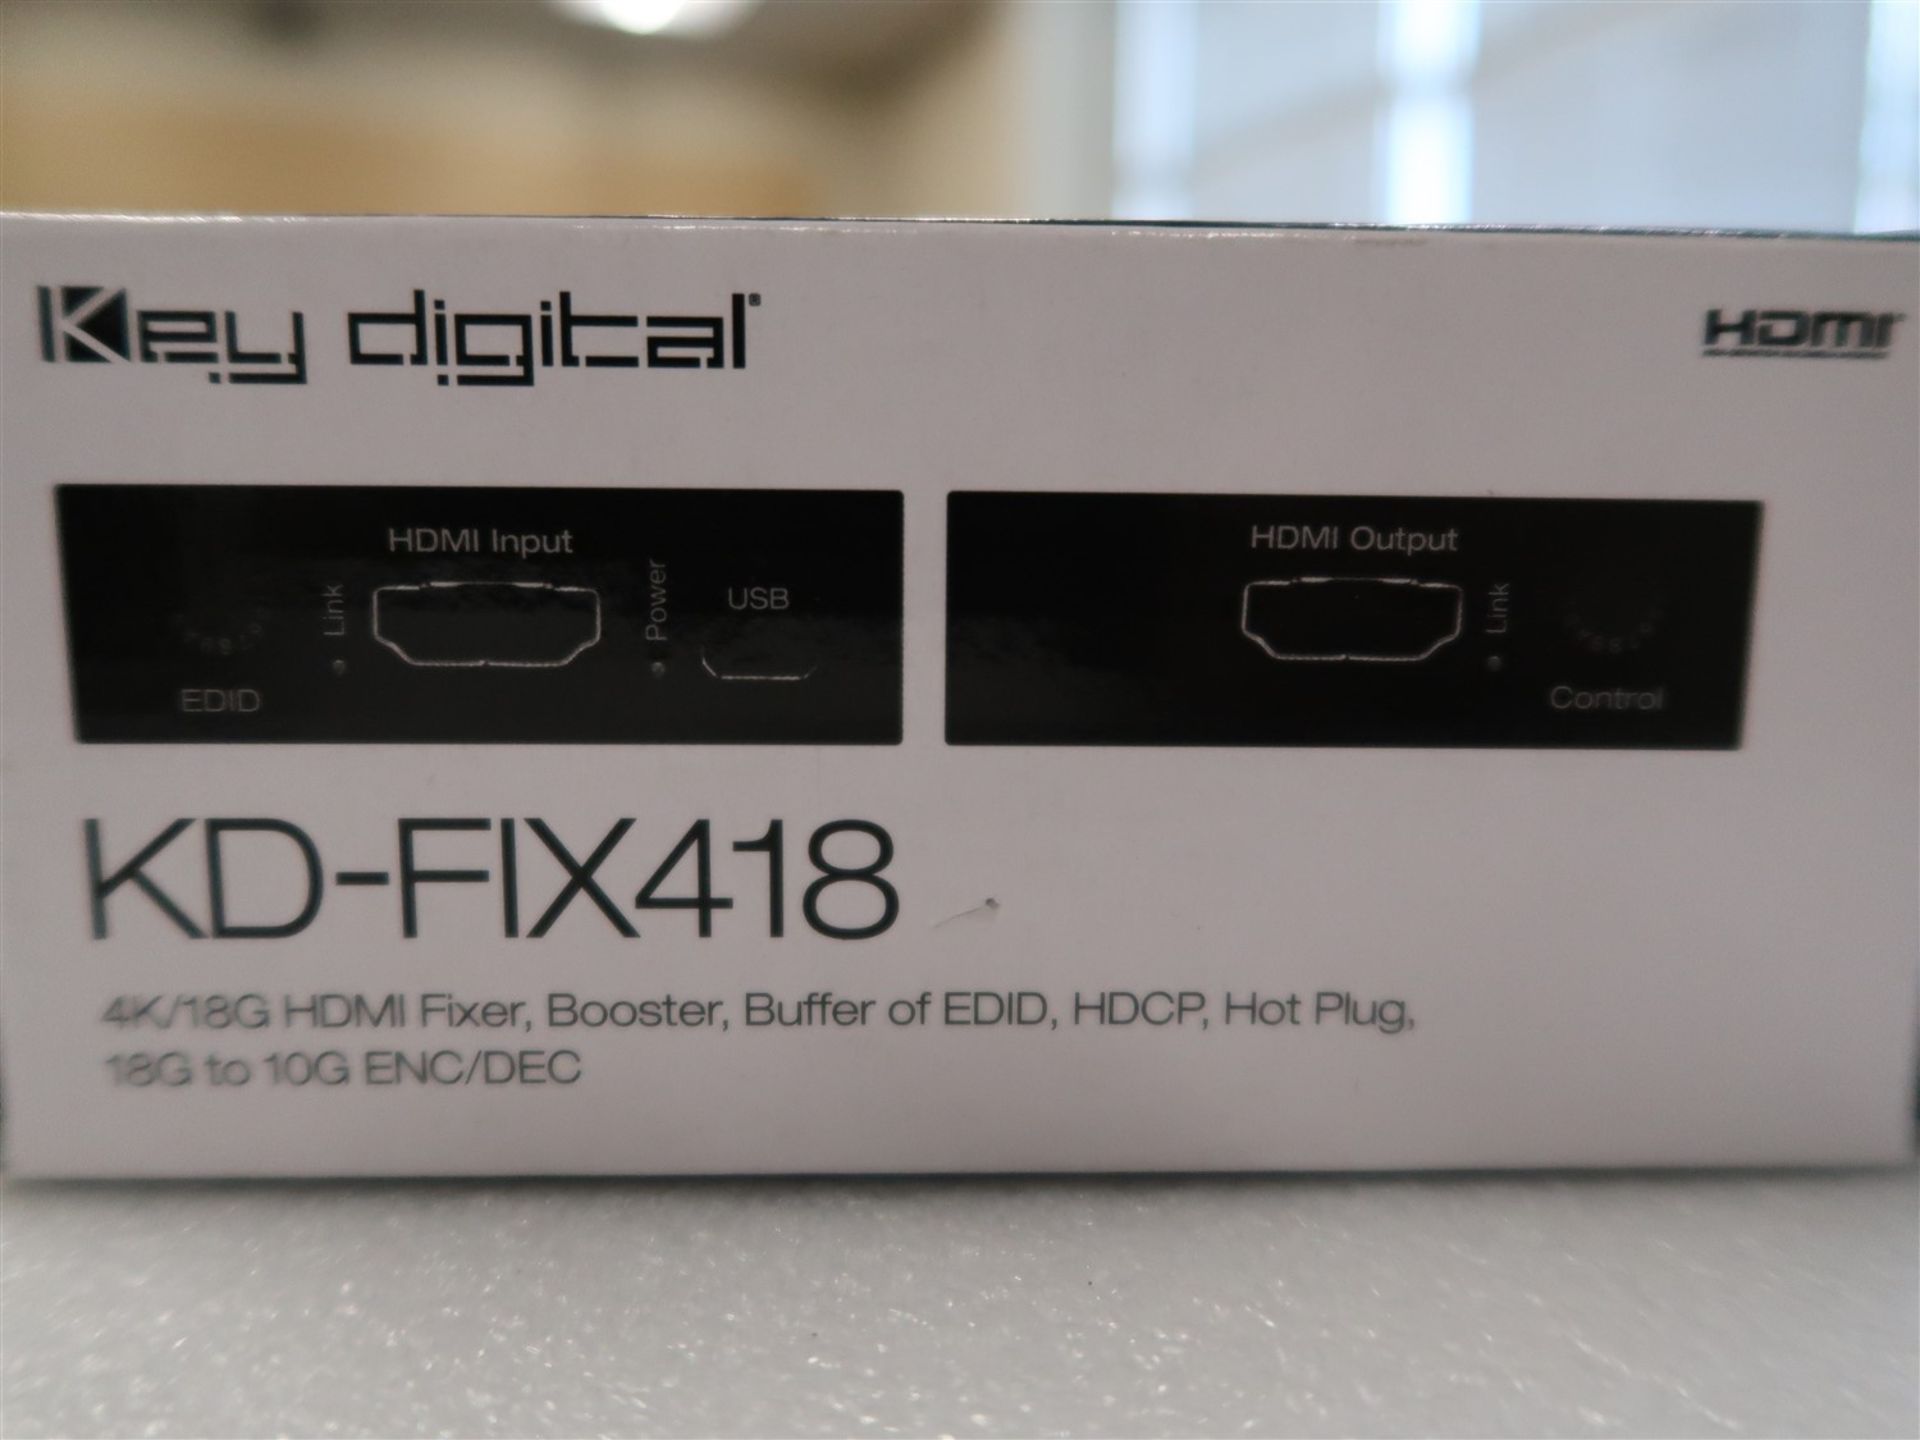 KEY DIGITAL FIX 418 4K/18G HDMI FIXER, BOOSTER, BUFFER OF EDID, (BNIB) - Image 2 of 2